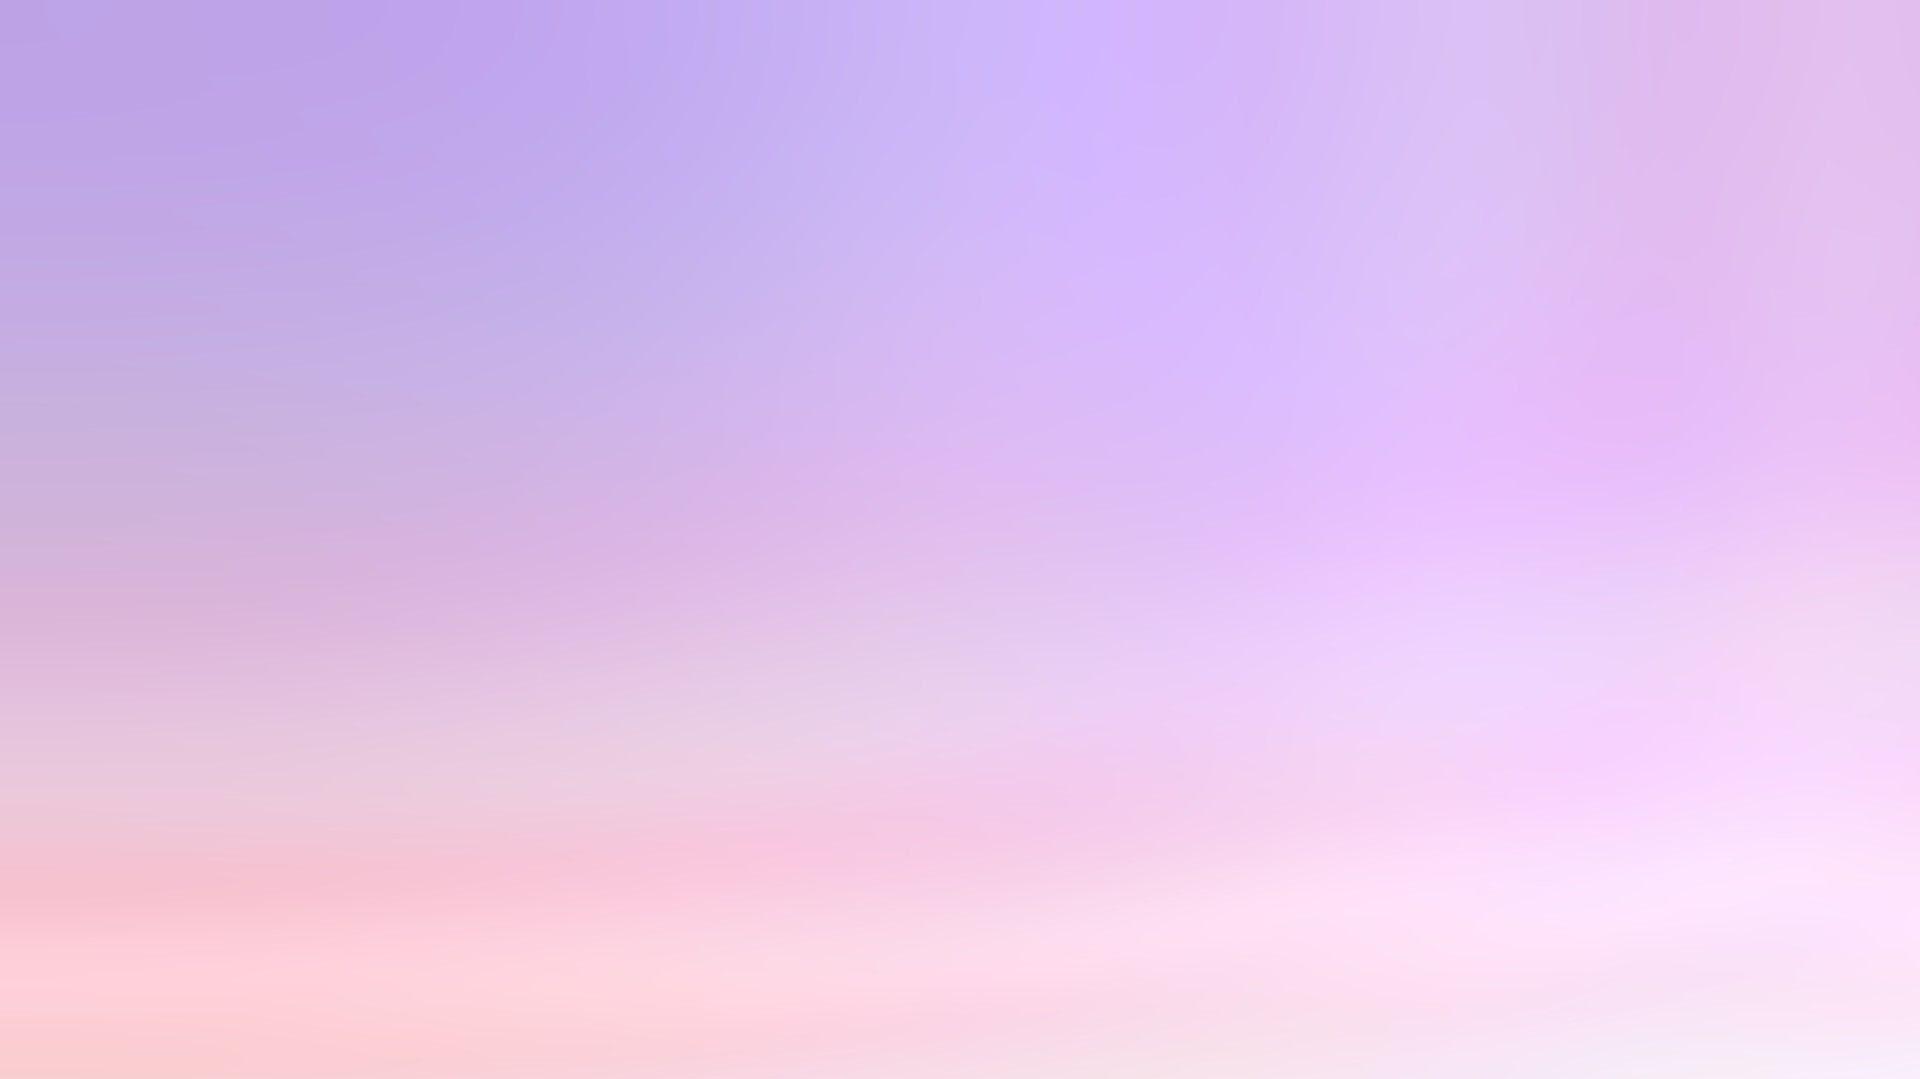 Hãy trang trí cho máy tính của bạn với màn hình nền màu tím pastel đẹp mắt để mang lại cảm giác tươi mới và thư giãn. Hãy tưởng tượng chỉ cần nhìn vào chiếc máy tính của bạn, bạn đã được đắm chìm trong sự thanh lịch và sự tinh tế từ màn hình nền màu tím pastel đó.